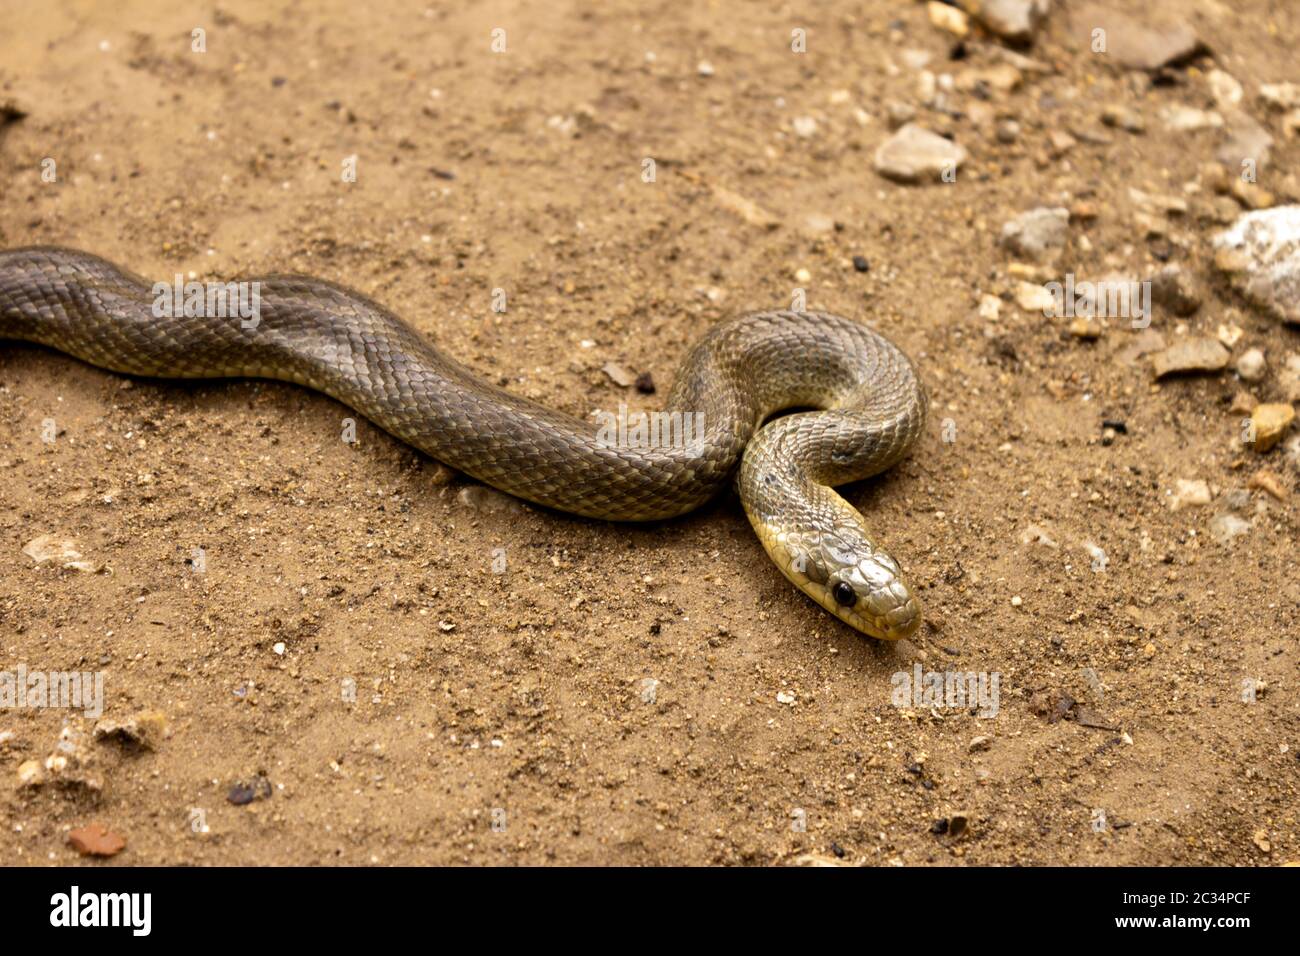 Natrix Maura sur le terrain. Serpent d'eau nicheur dans certaines régions (Camargue, du genre de serpents colubridae Natrix. Banque D'Images